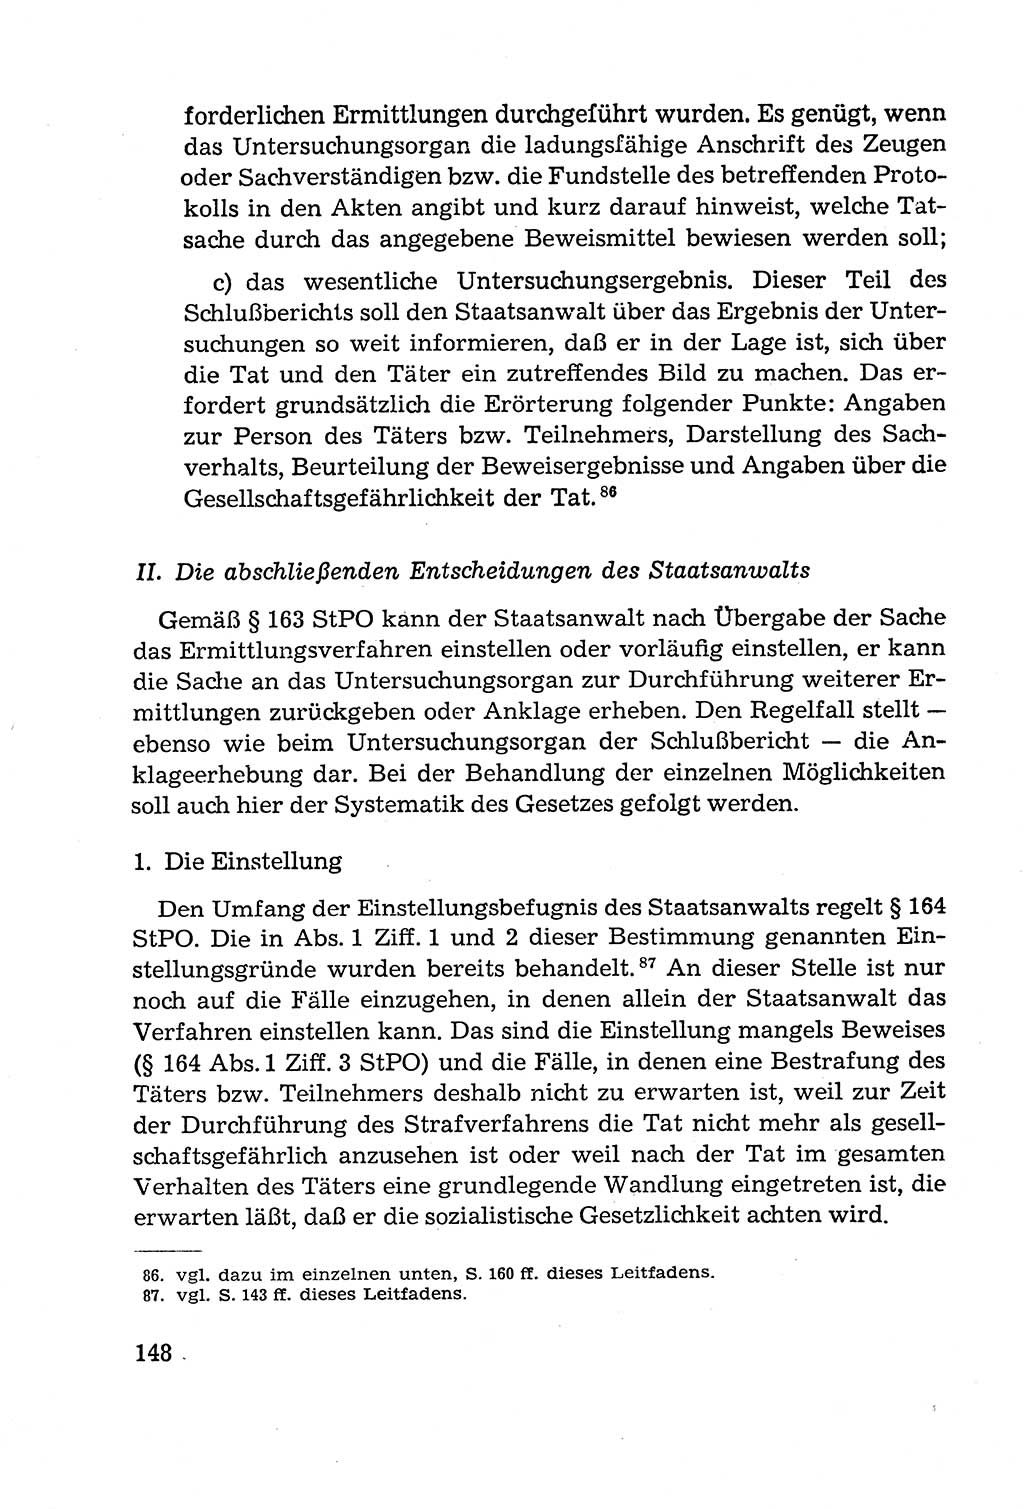 Leitfaden des Strafprozeßrechts der Deutschen Demokratischen Republik (DDR) 1959, Seite 148 (LF StPR DDR 1959, S. 148)